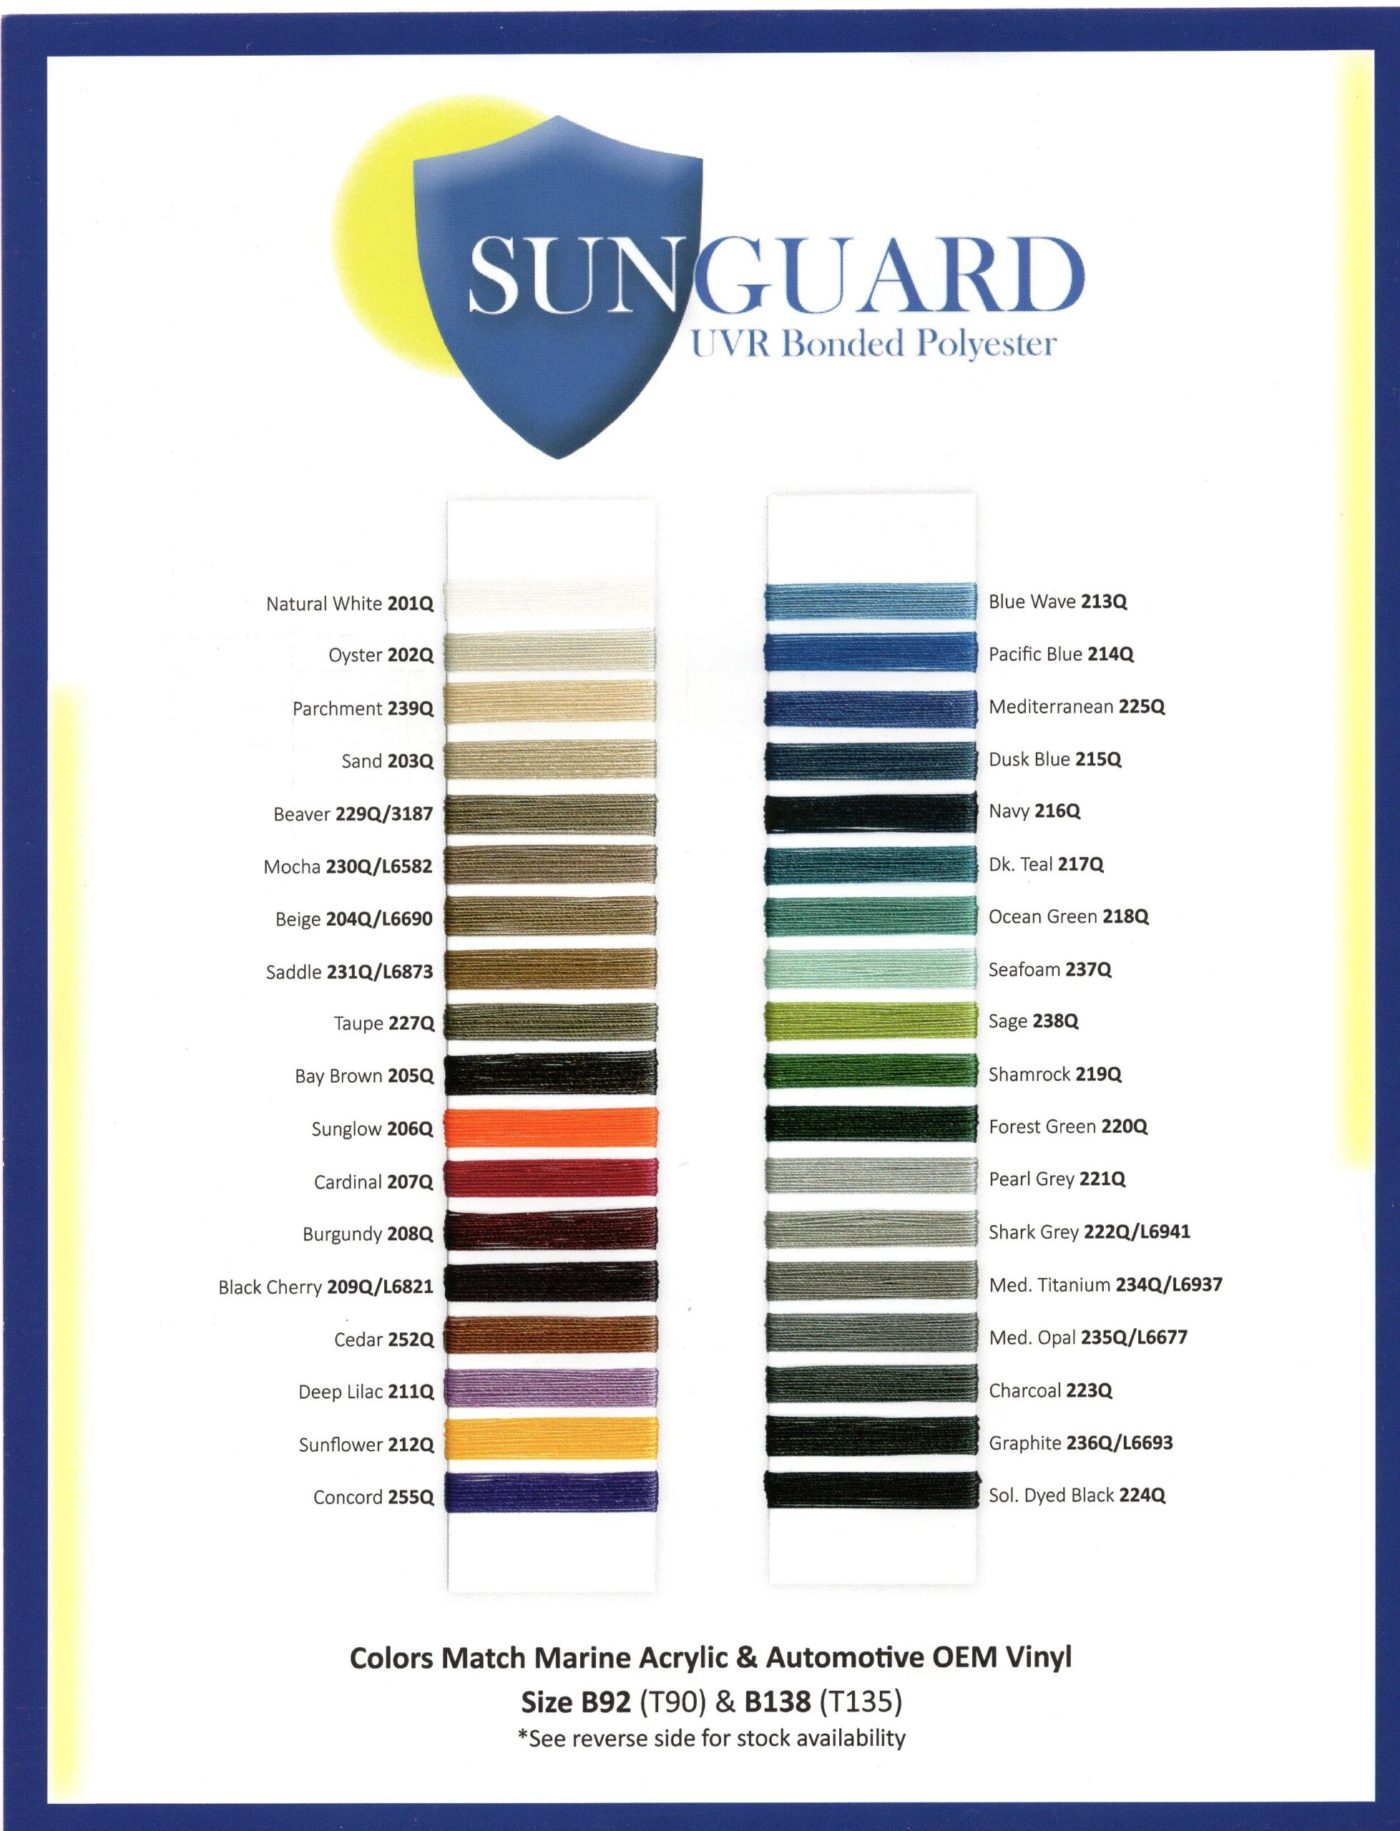 Thread #92 - Sunguard - 4oz Bonded Polyester